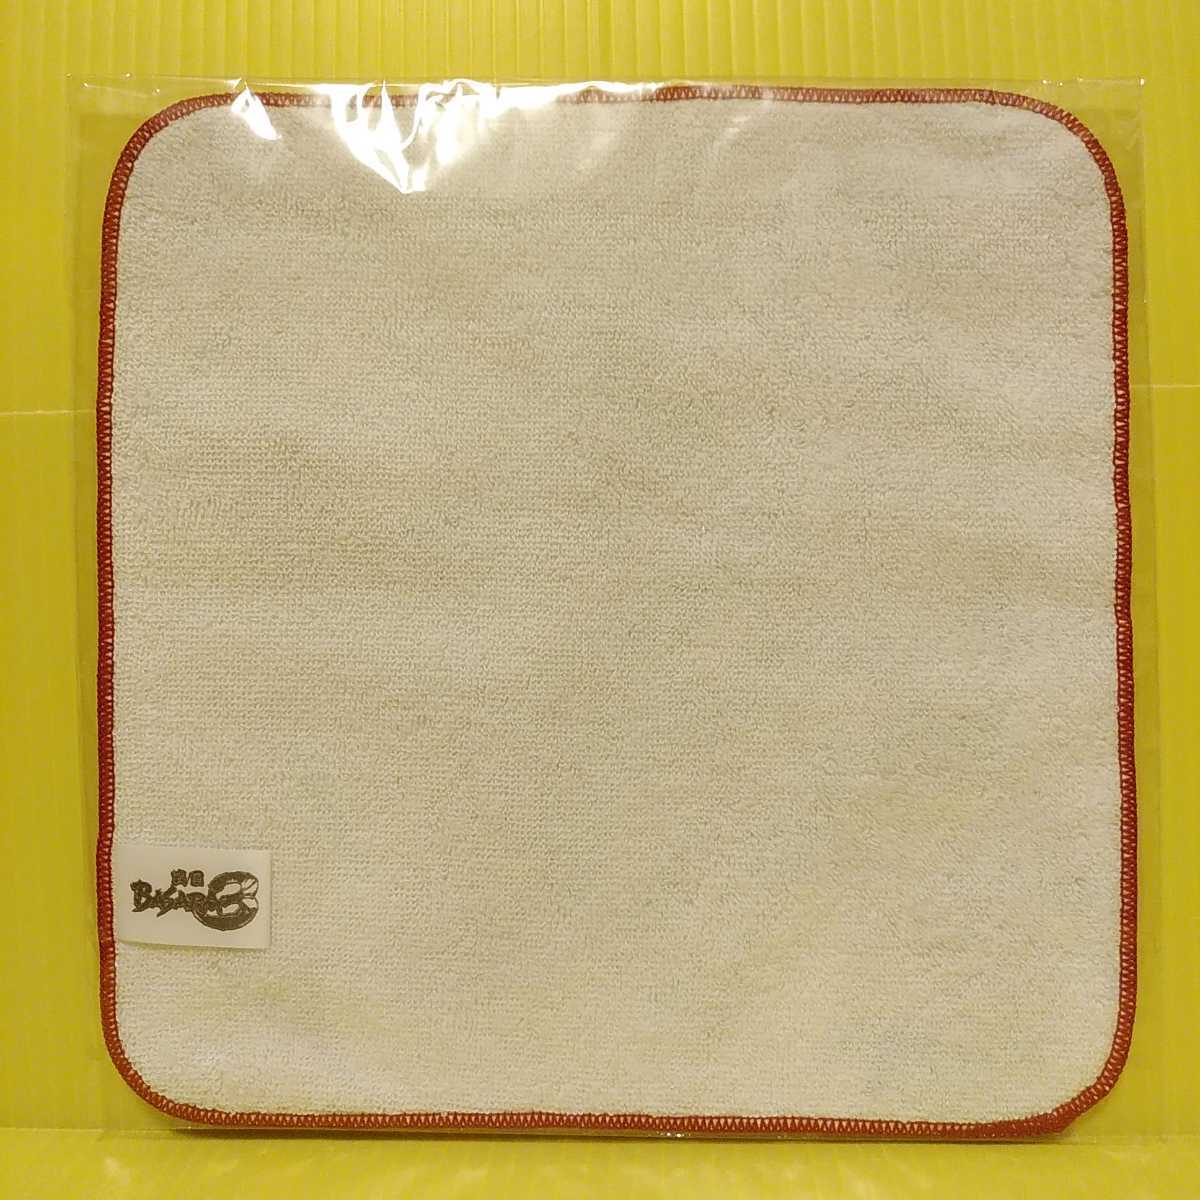  новый товар [ Sengoku BASARA3* Mini полотенце 2 пункт ] подлинный рисовое поле ..| date ..* бесплатная доставка 